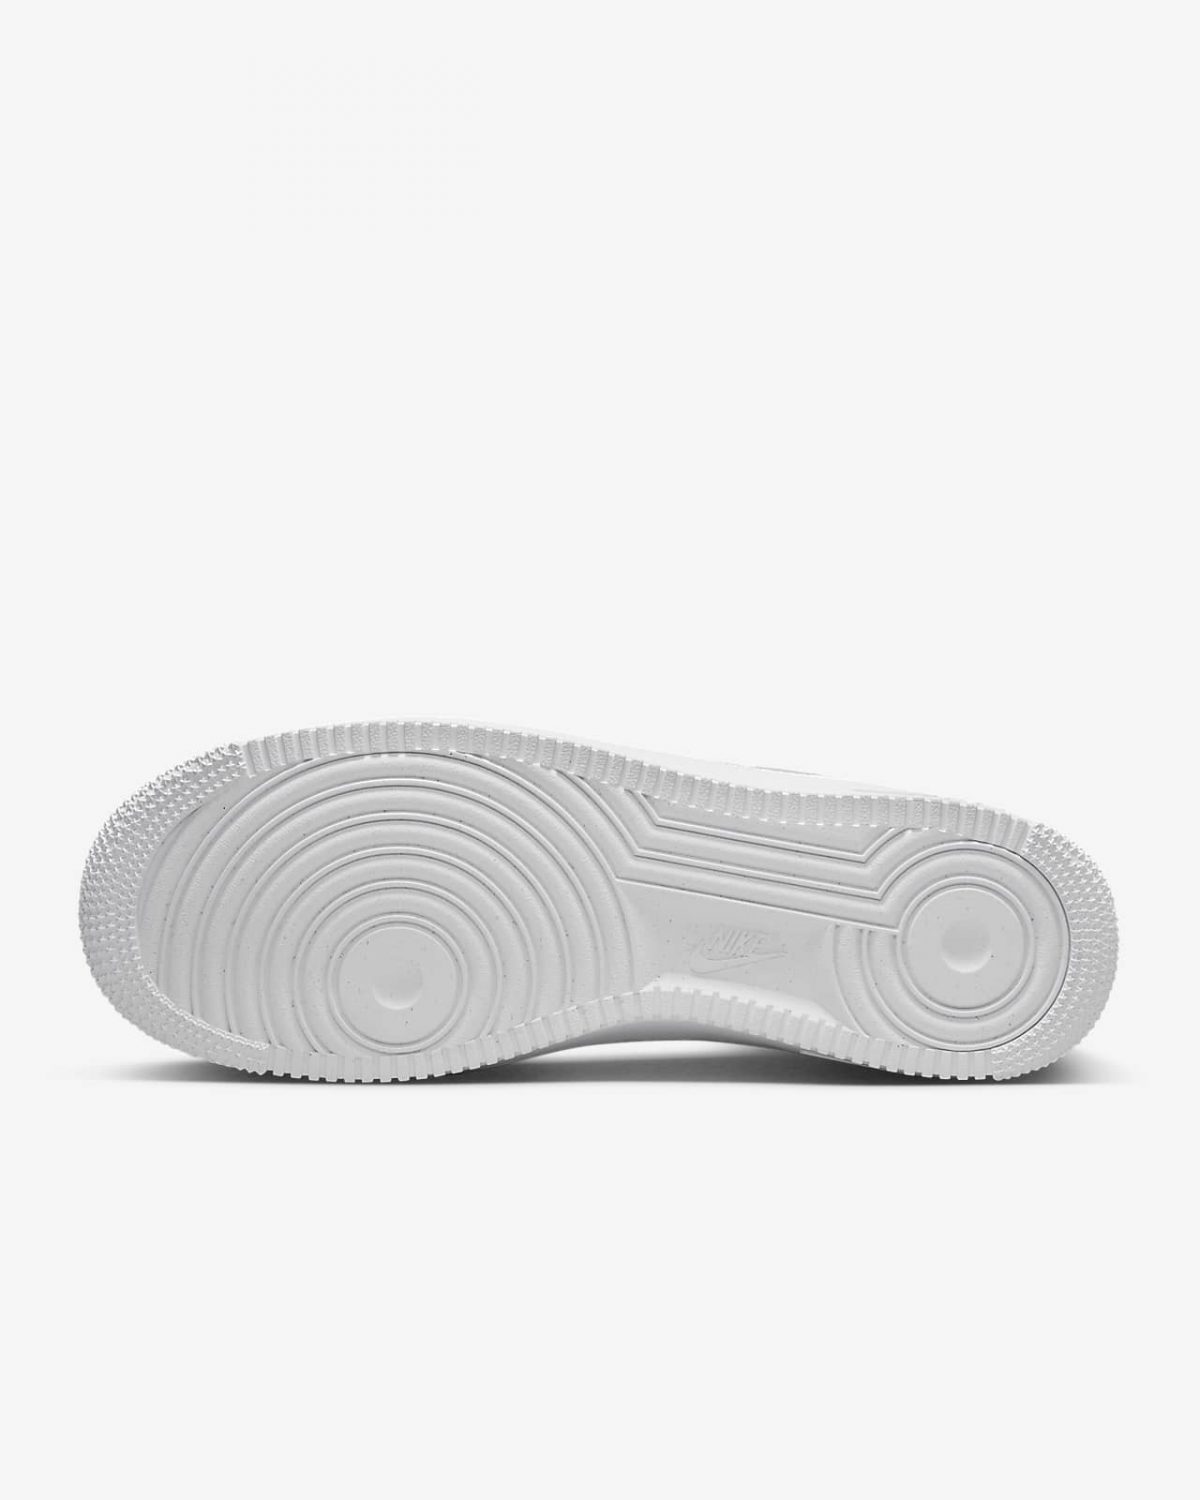 Мужские кроссовки Nike Air Force 1 SP белые фотография